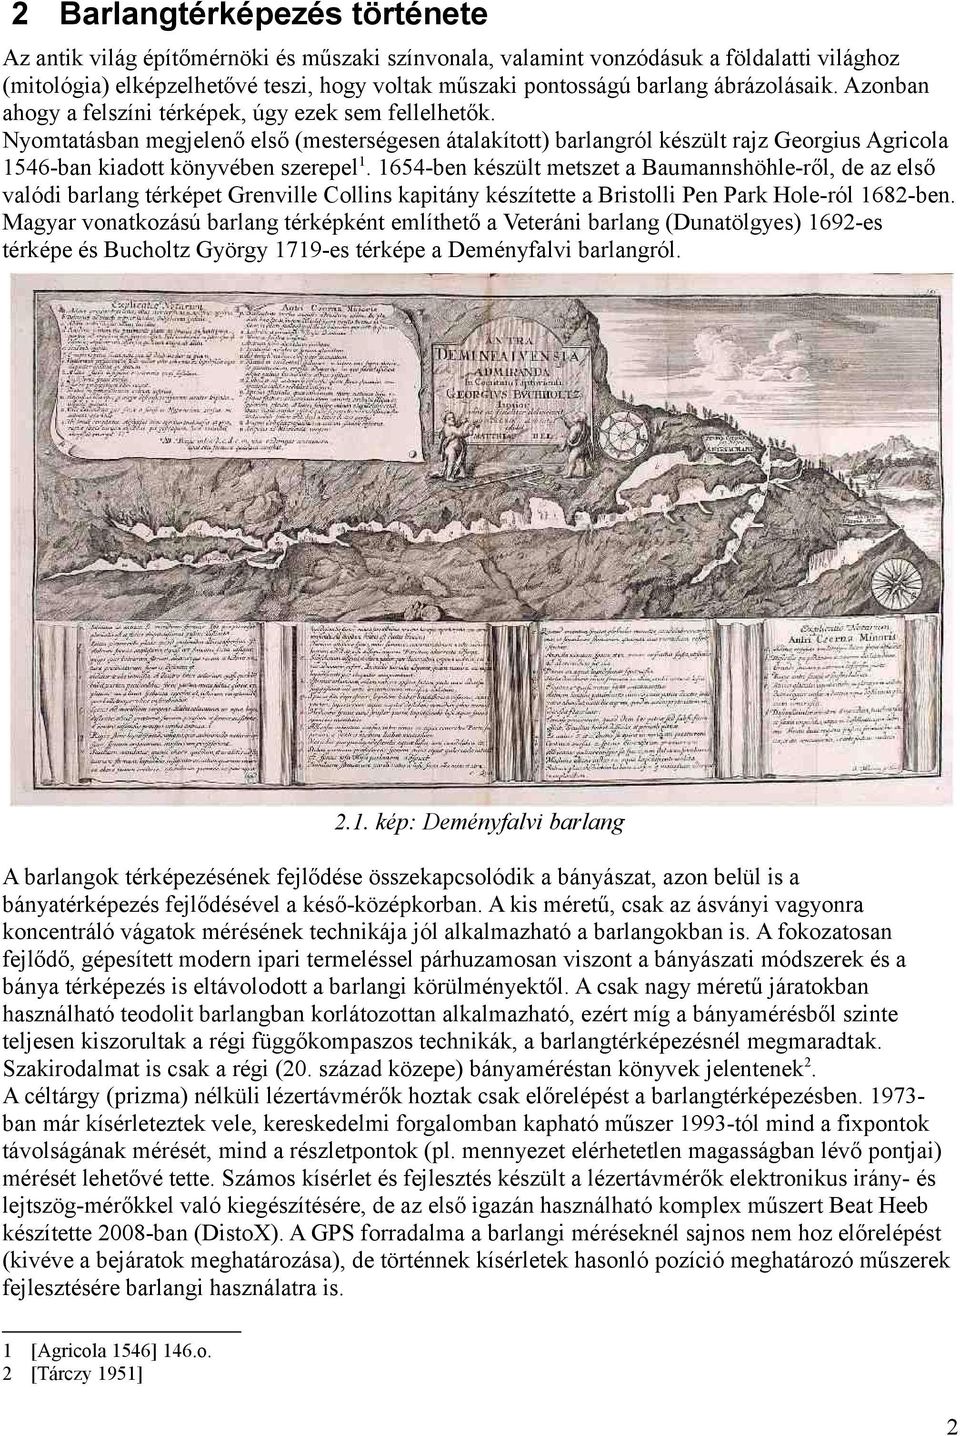 Nyomtatásban megjelenő első (mesterségesen átalakított) barlangról készült rajz Georgius Agricola 1546-ban kiadott könyvében szerepel1.